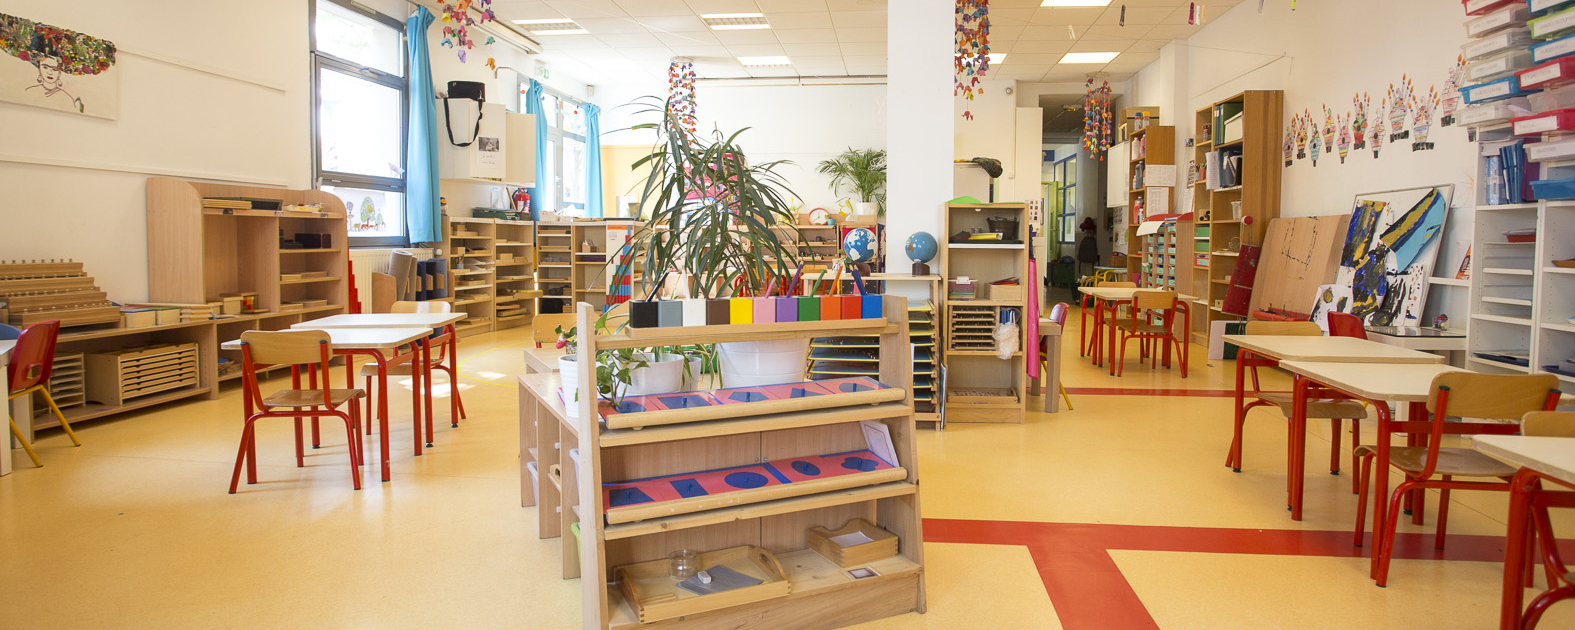 Ecole Nouvelle de la Rize, école alternative maternelle et primaire laïque privée sur Lyon, pédagogie Montessori Freinet...